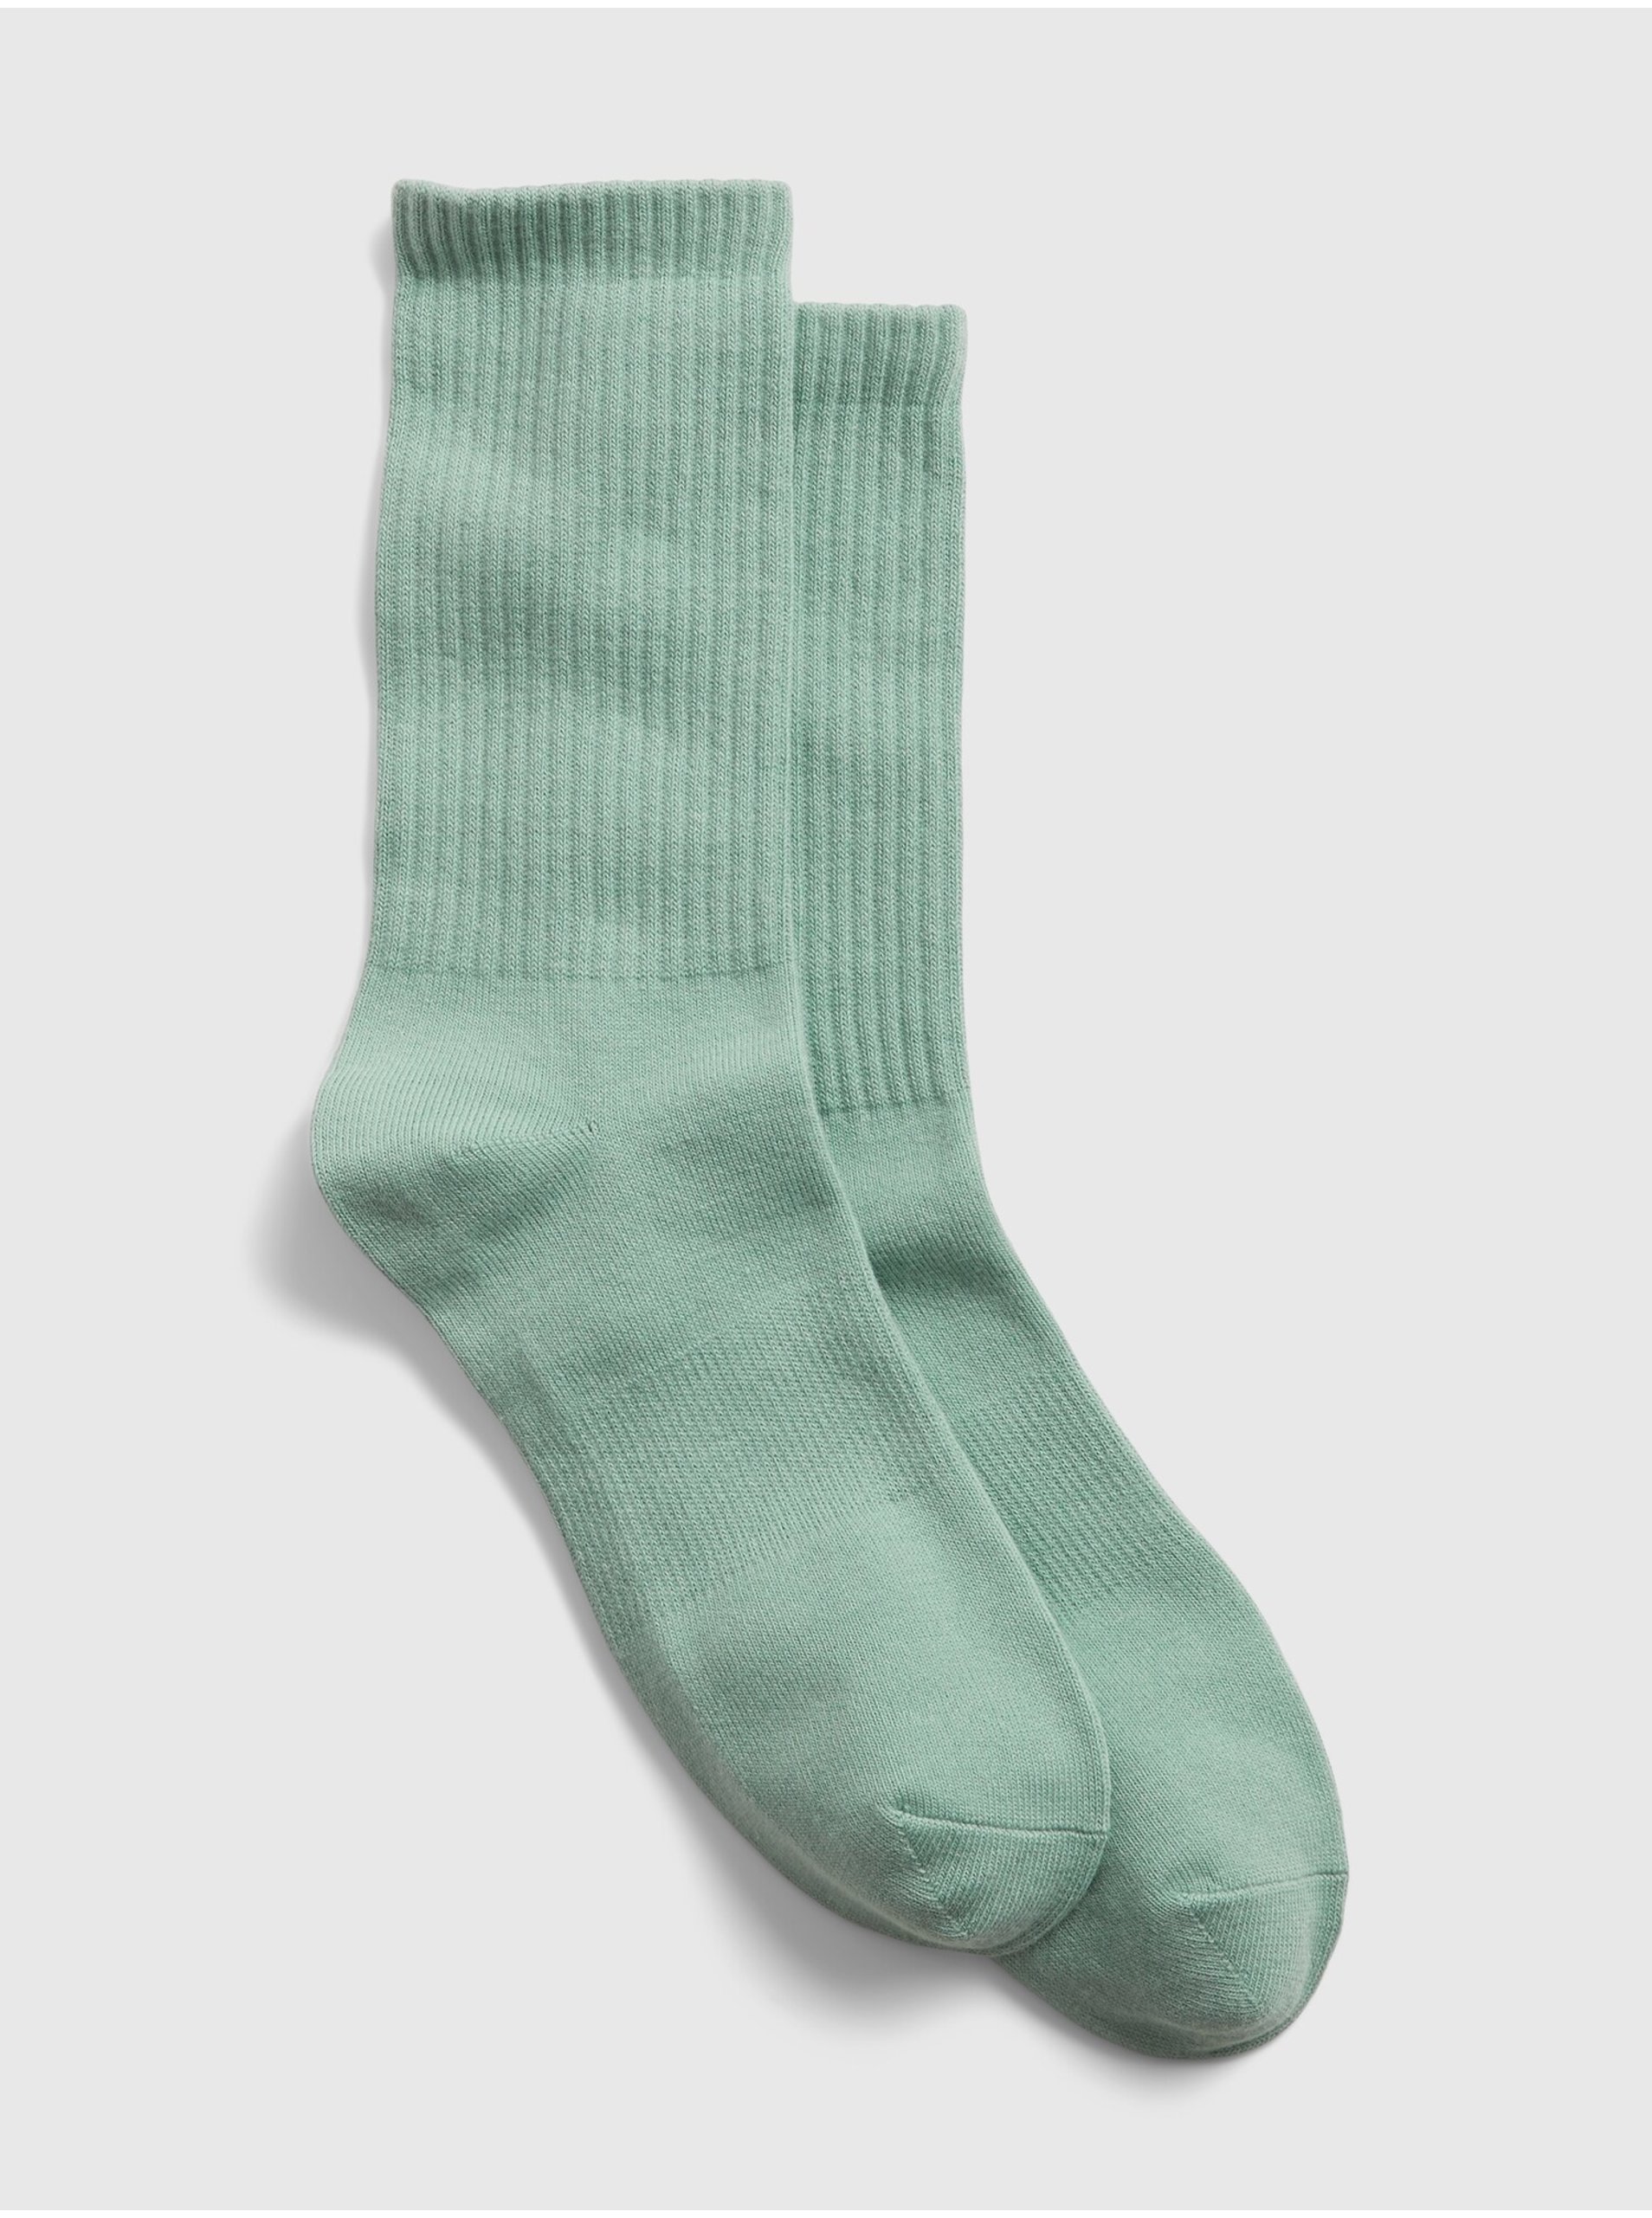 Lacno Zelené pánské ponožky athletic crew socks